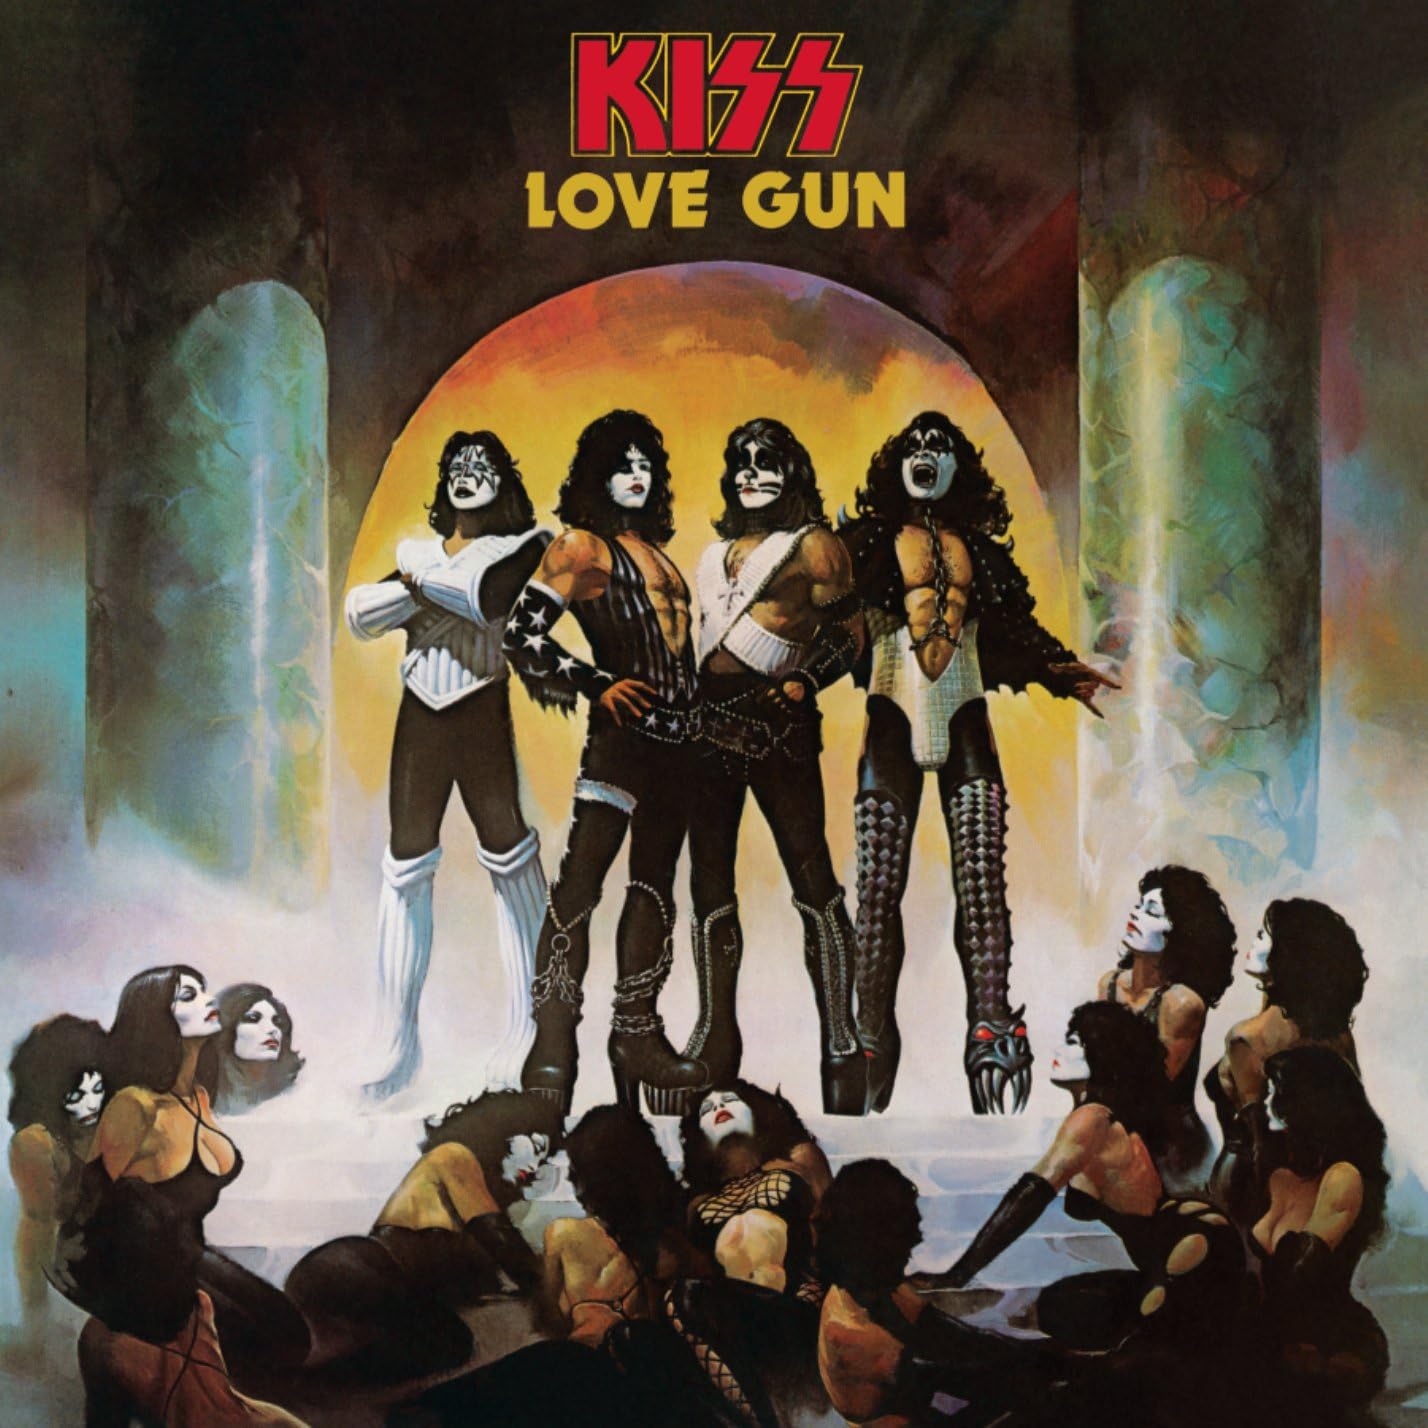 Kiss - Love Gun (Ltd. Ed. 2020 Tangerine/Aqua Splatter vinyl reissue) - Vinyl - New